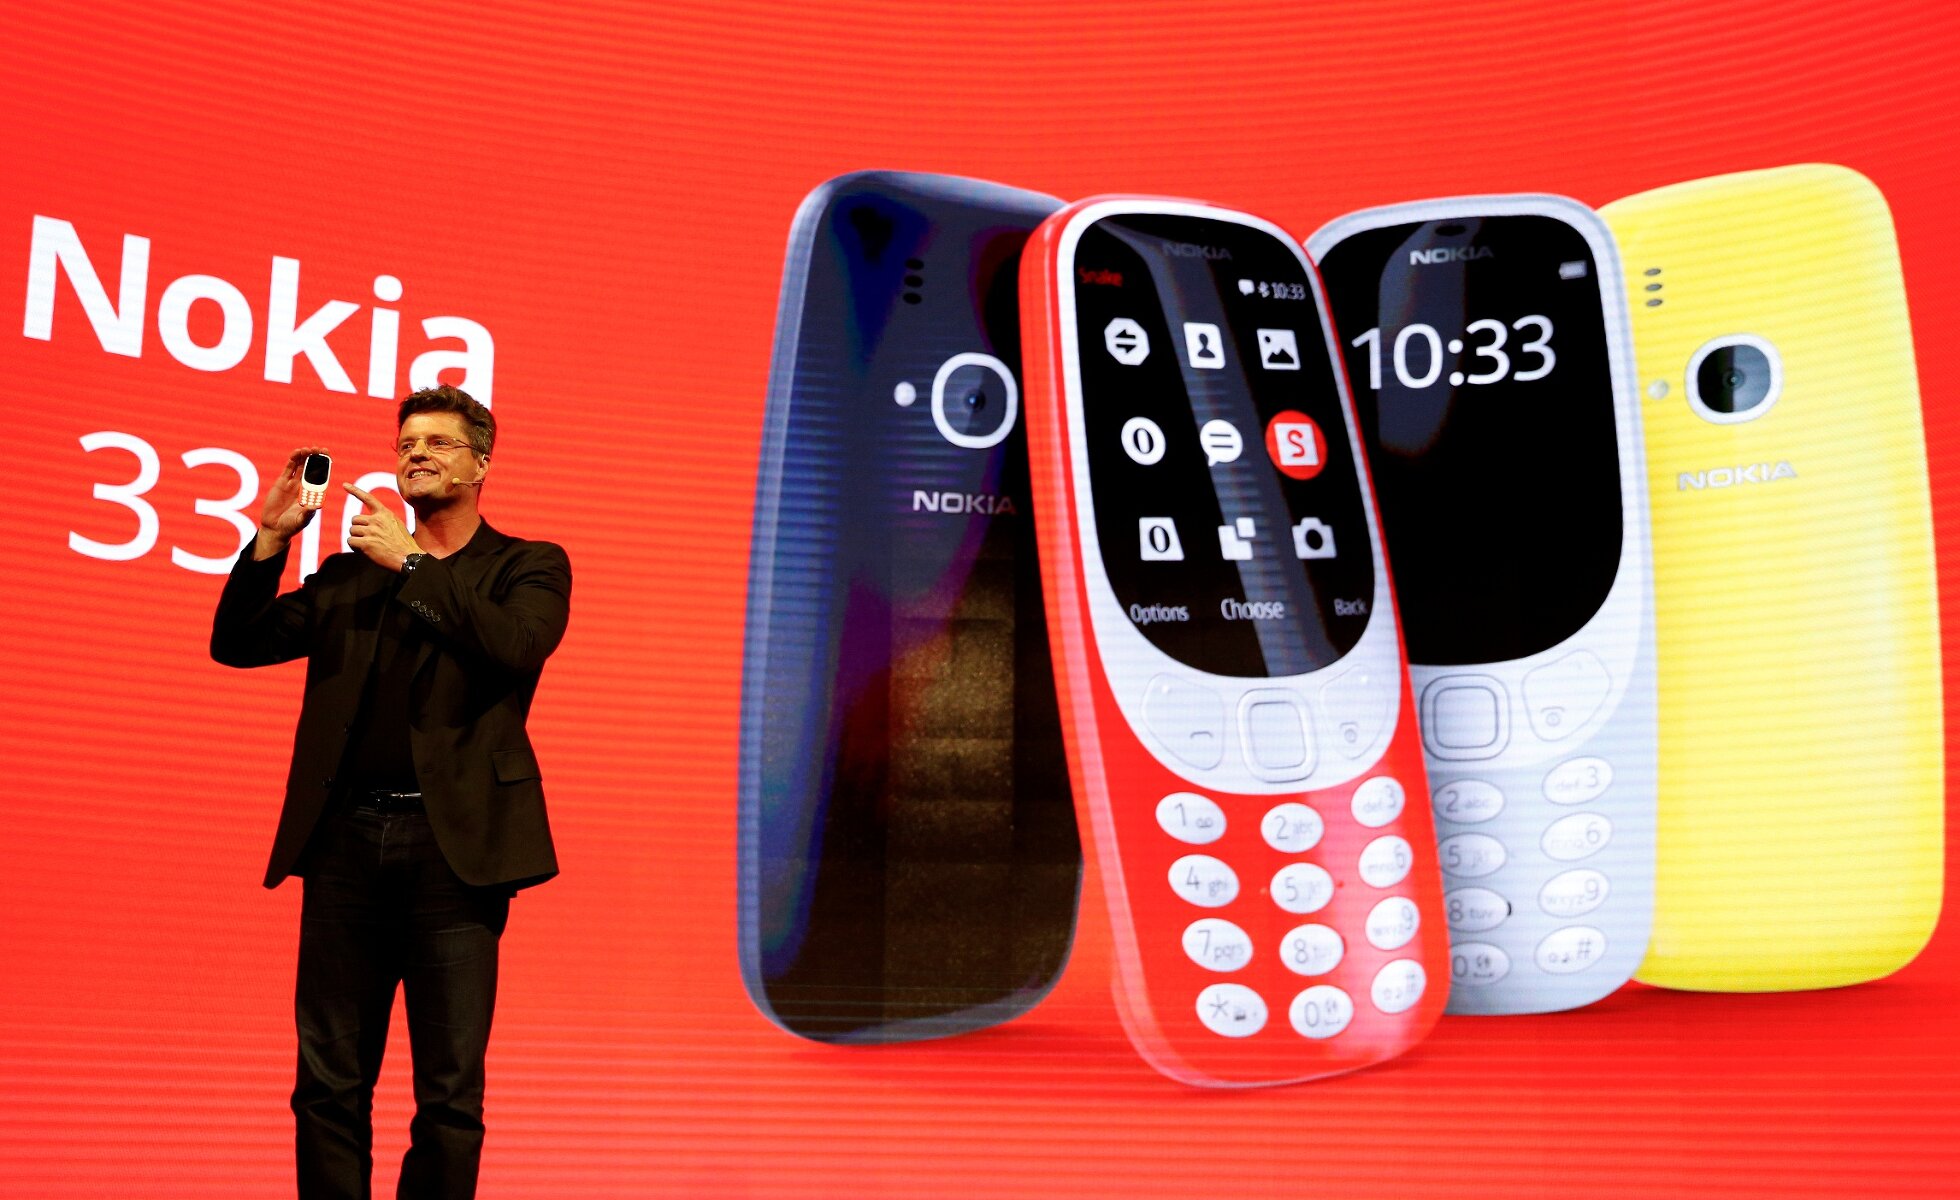 <p><strong>Nokia 3310</strong></p>

<p>Одной из самых заметных новинок выставки стала реинкарнация классической модели Nokia 3310. Внешне новая версия напоминает &laquo;неубиваемый&raquo;&nbsp;телефон из начала нулевых, однако при этом стала тоньше и легче. Возвращение 3310 &mdash; <a href="http://www.theverge.com/circuitbreaker/2017/2/26/14743102/play-snake-on-nokia-3310-mwc-2017" target="_blank">попытка </a>компании сыграть на ностальгии пользователей. С момента выхода первого телефона в 2000 году Nokia продала 126 миллионов этой модели. Спустя 17 лет у телефона появится цветной дисплей диагональю 2,4 дюйма с разрешением 320х240 пикселей, двухмегапиксельная камера и&nbsp;слот для карты памяти microSD. Заряда батареи, как и в старой модели, будет хватать надолго: 22 часа в режиме разговора и 31 день в режиме ожидания. Телефон будет доступен в четырех цветах: красном, желтом, сером и темно-синем. На презентации разработчики особенно заострили внимание на предустановленных в телефоне игре &laquo;змейка&raquo;&nbsp;и классических рингтонах. Цена &mdash; &euro;49.</p>